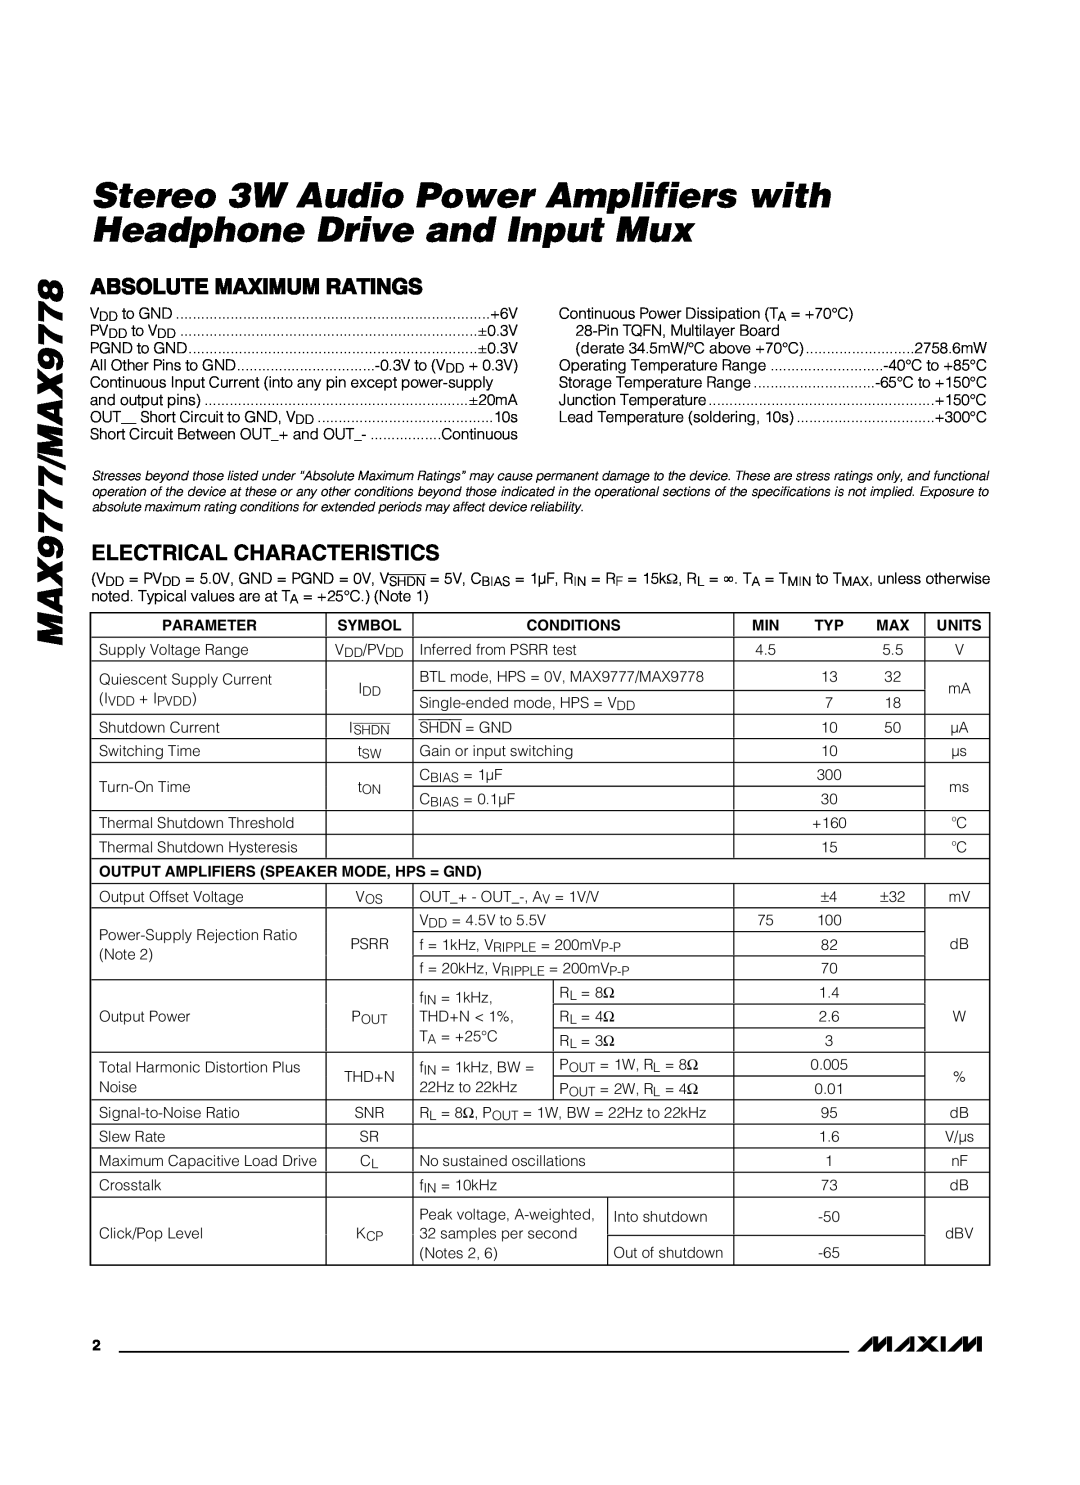 Maxim manual MAX9777/MAX9778, Absolute Maximum Ratings, Electrical Characteristics 